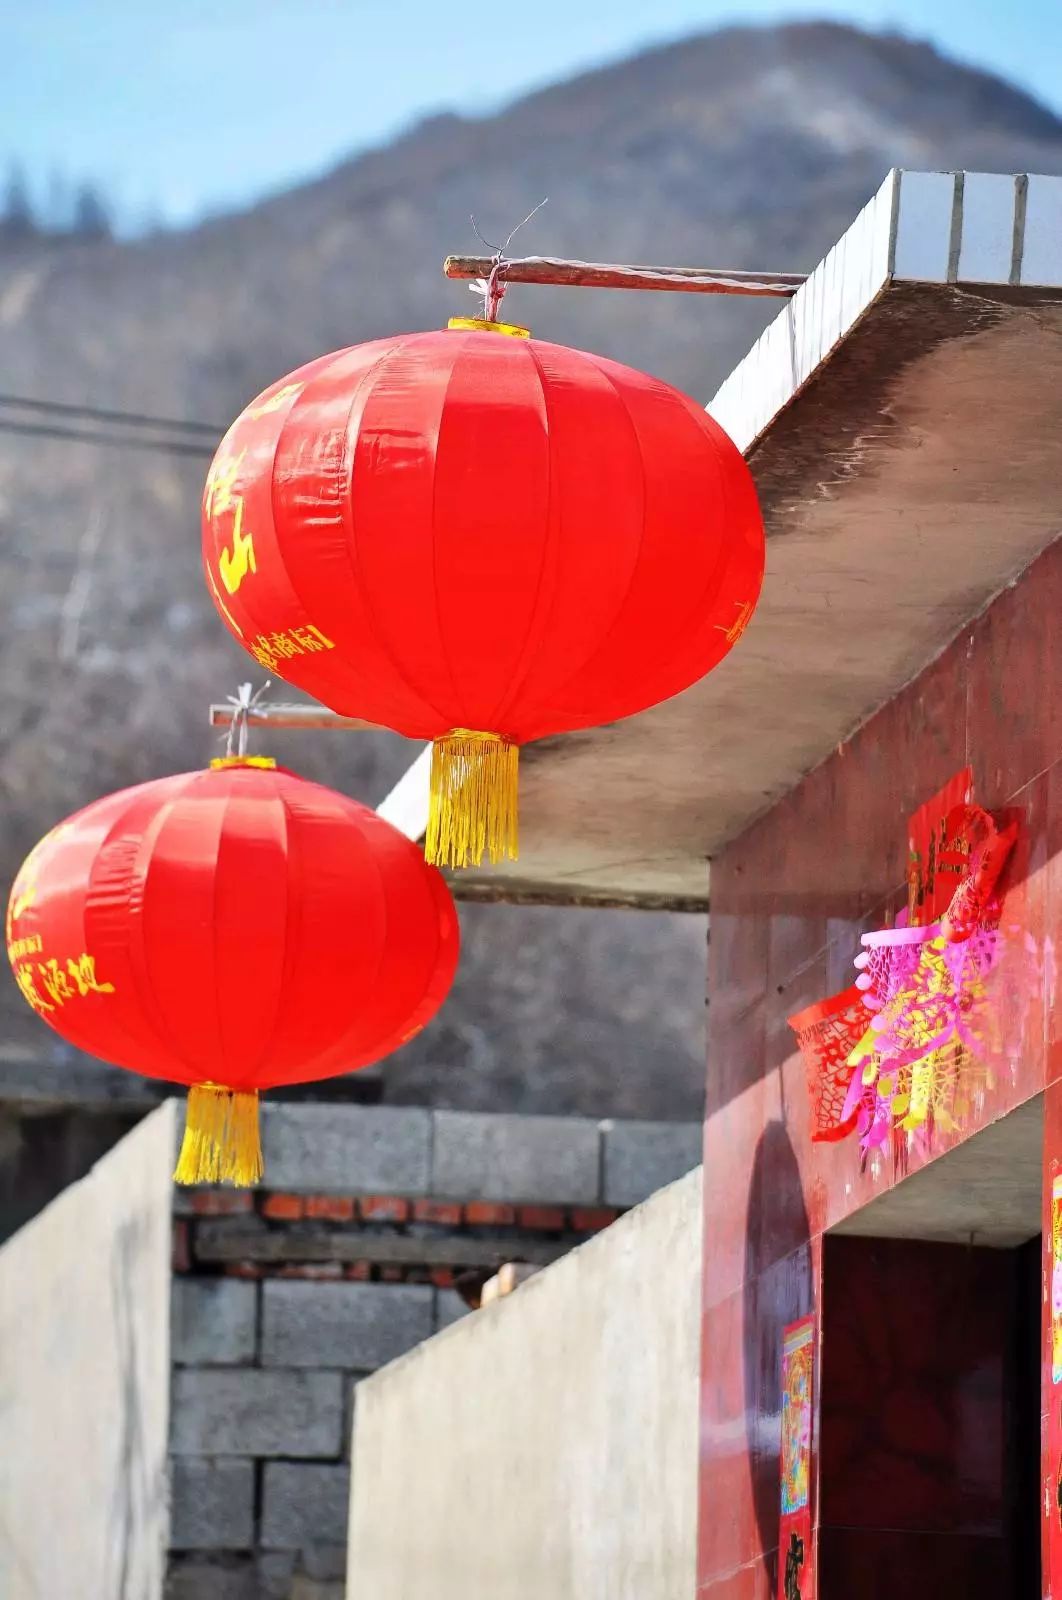 过年挂红灯笼是中国的古老习俗,红色代表喜庆,圆形灯笼则代表团圆美满